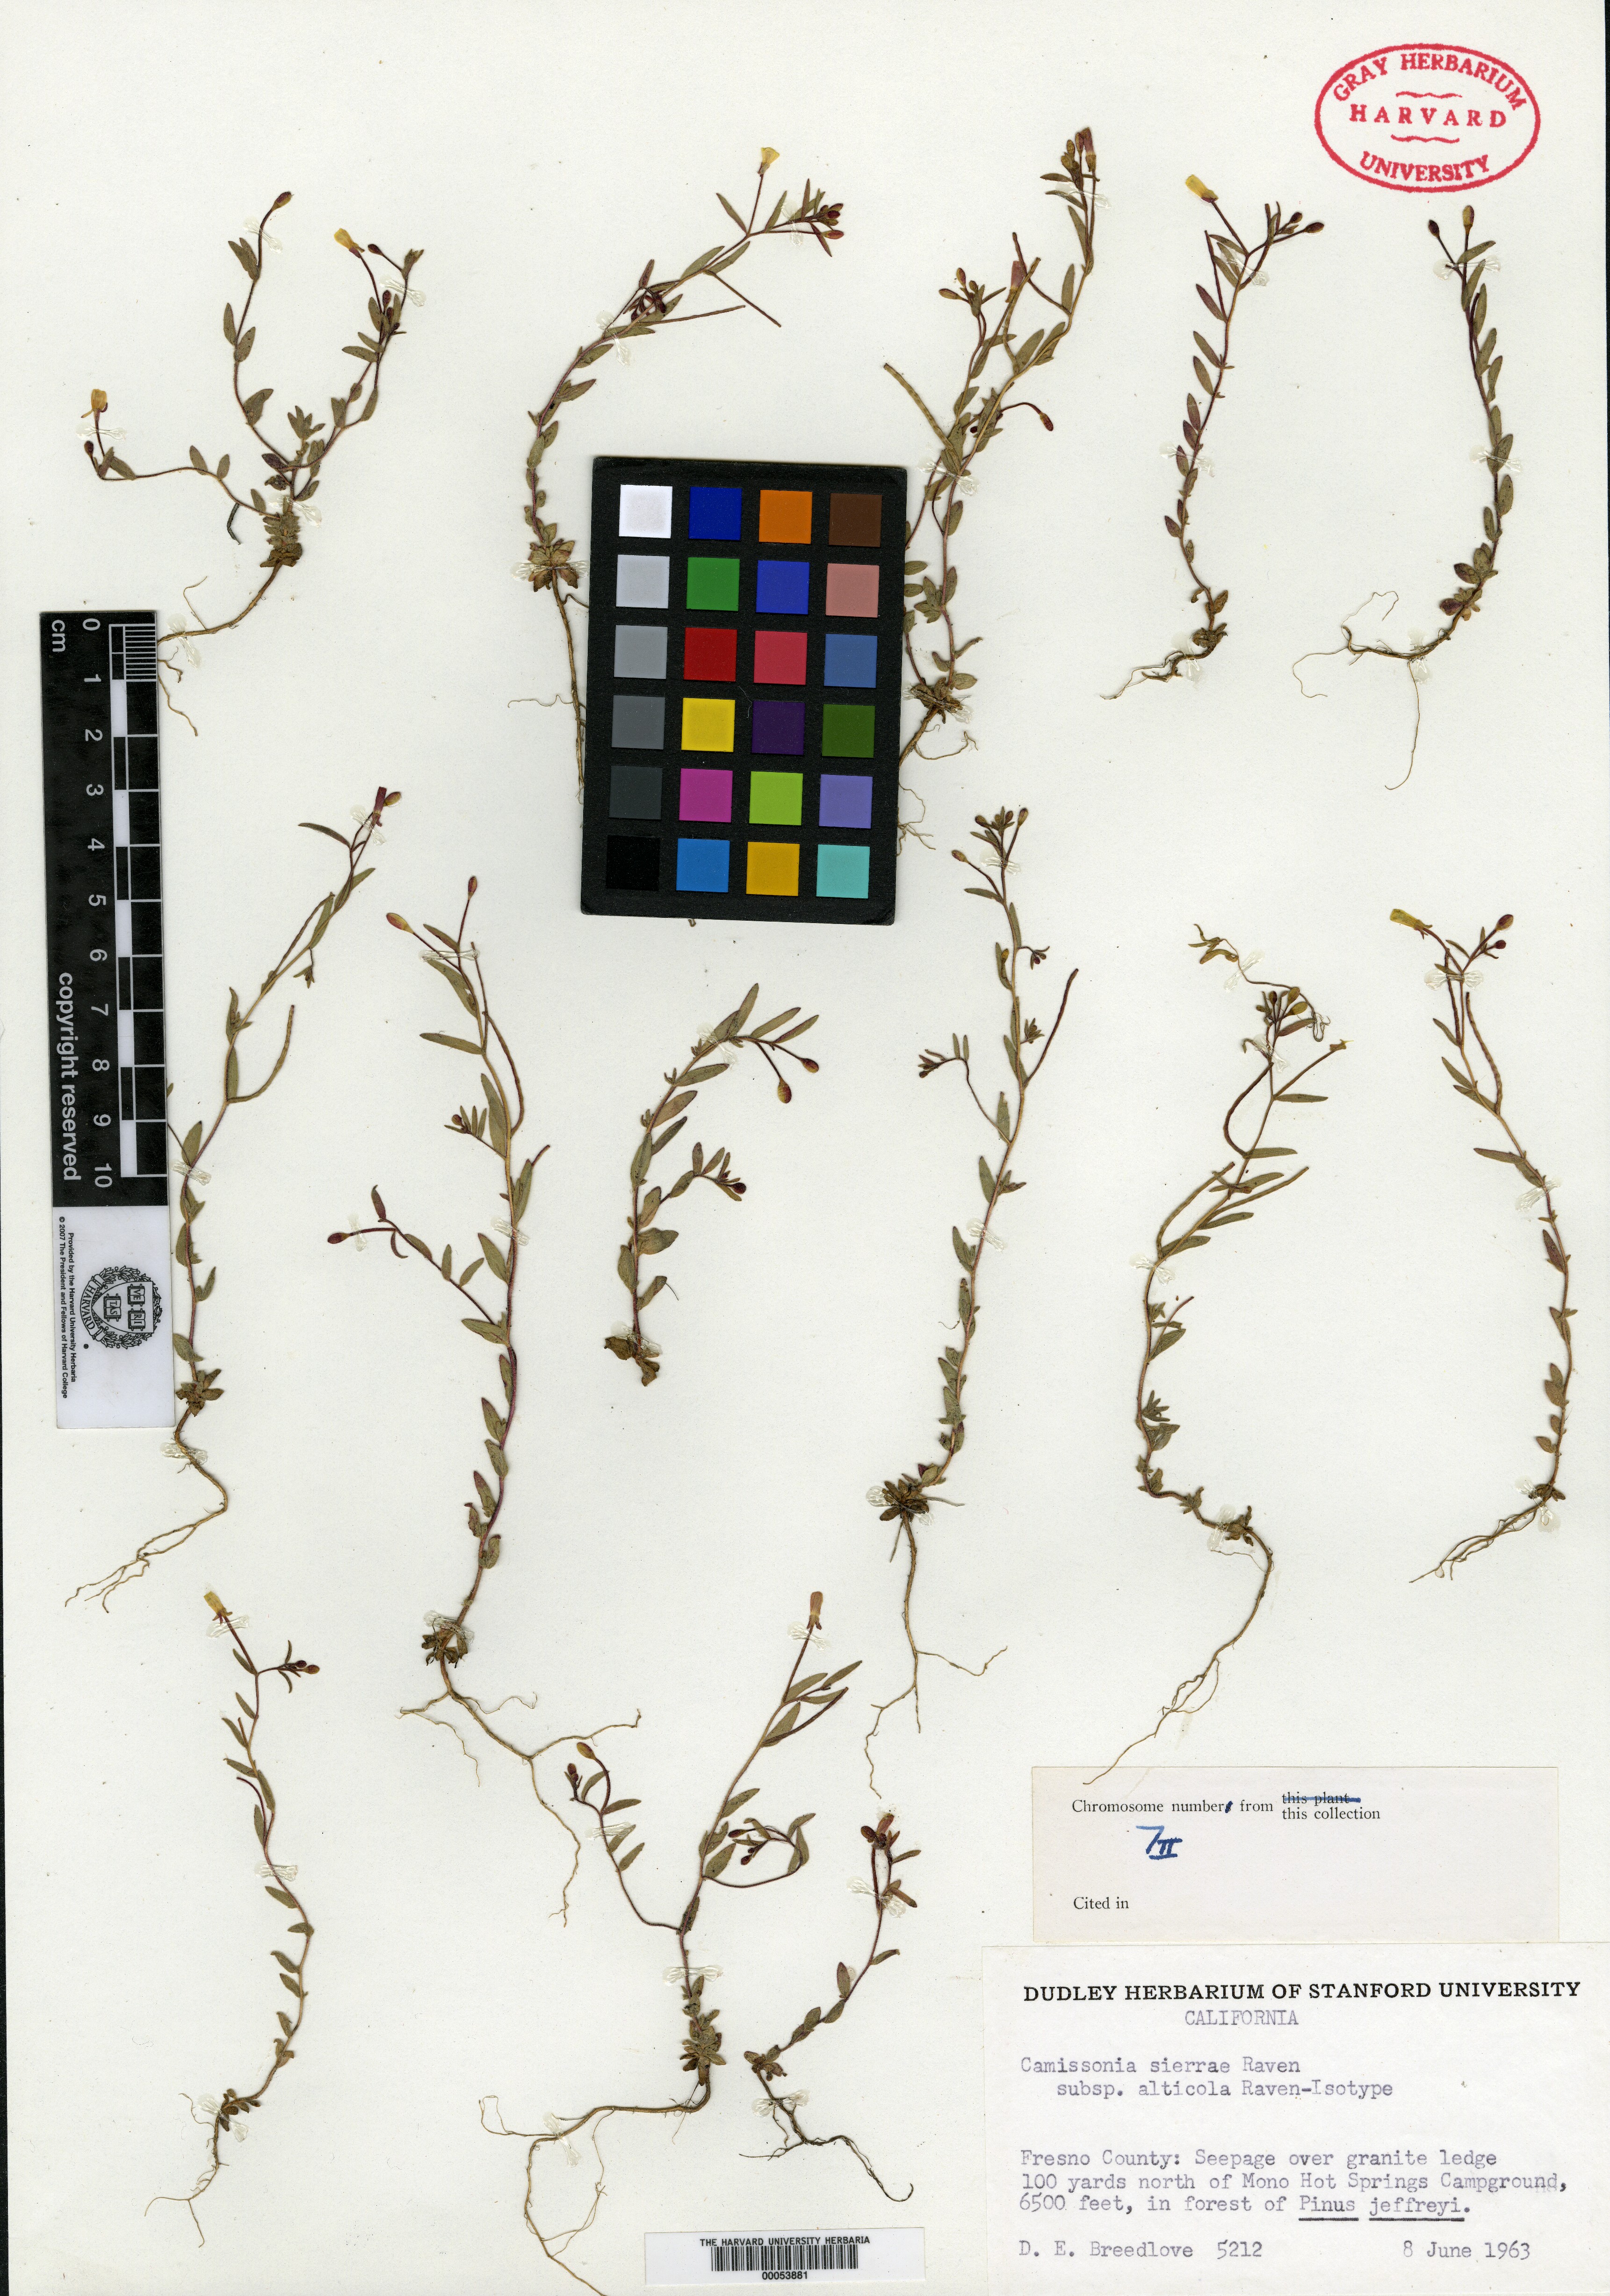 Camissonia sierrae subsp. alticola image